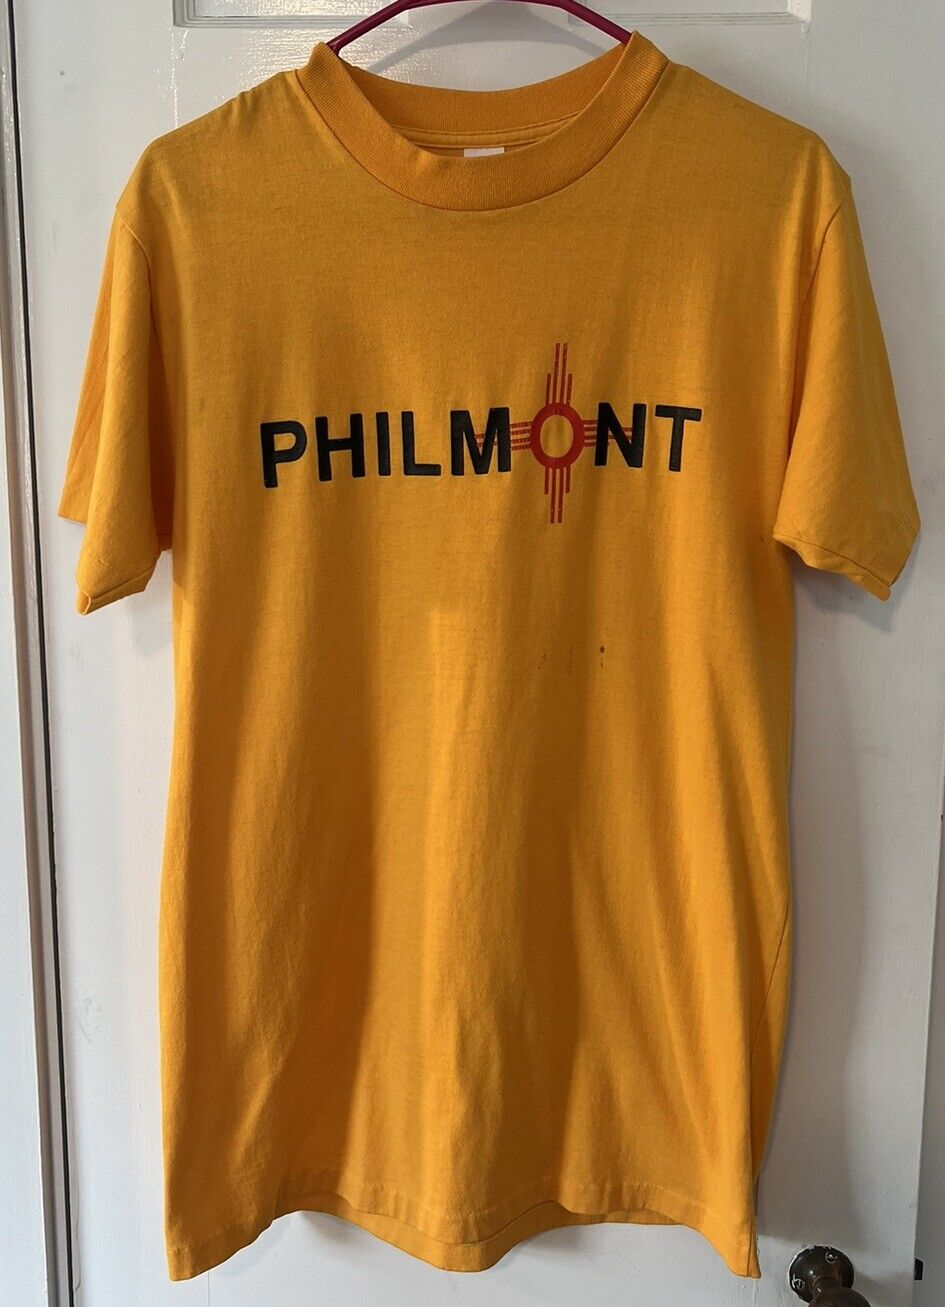 Vintage 90s Single Stitch Philmont BSA Boy Scouts T Shirt Size Large